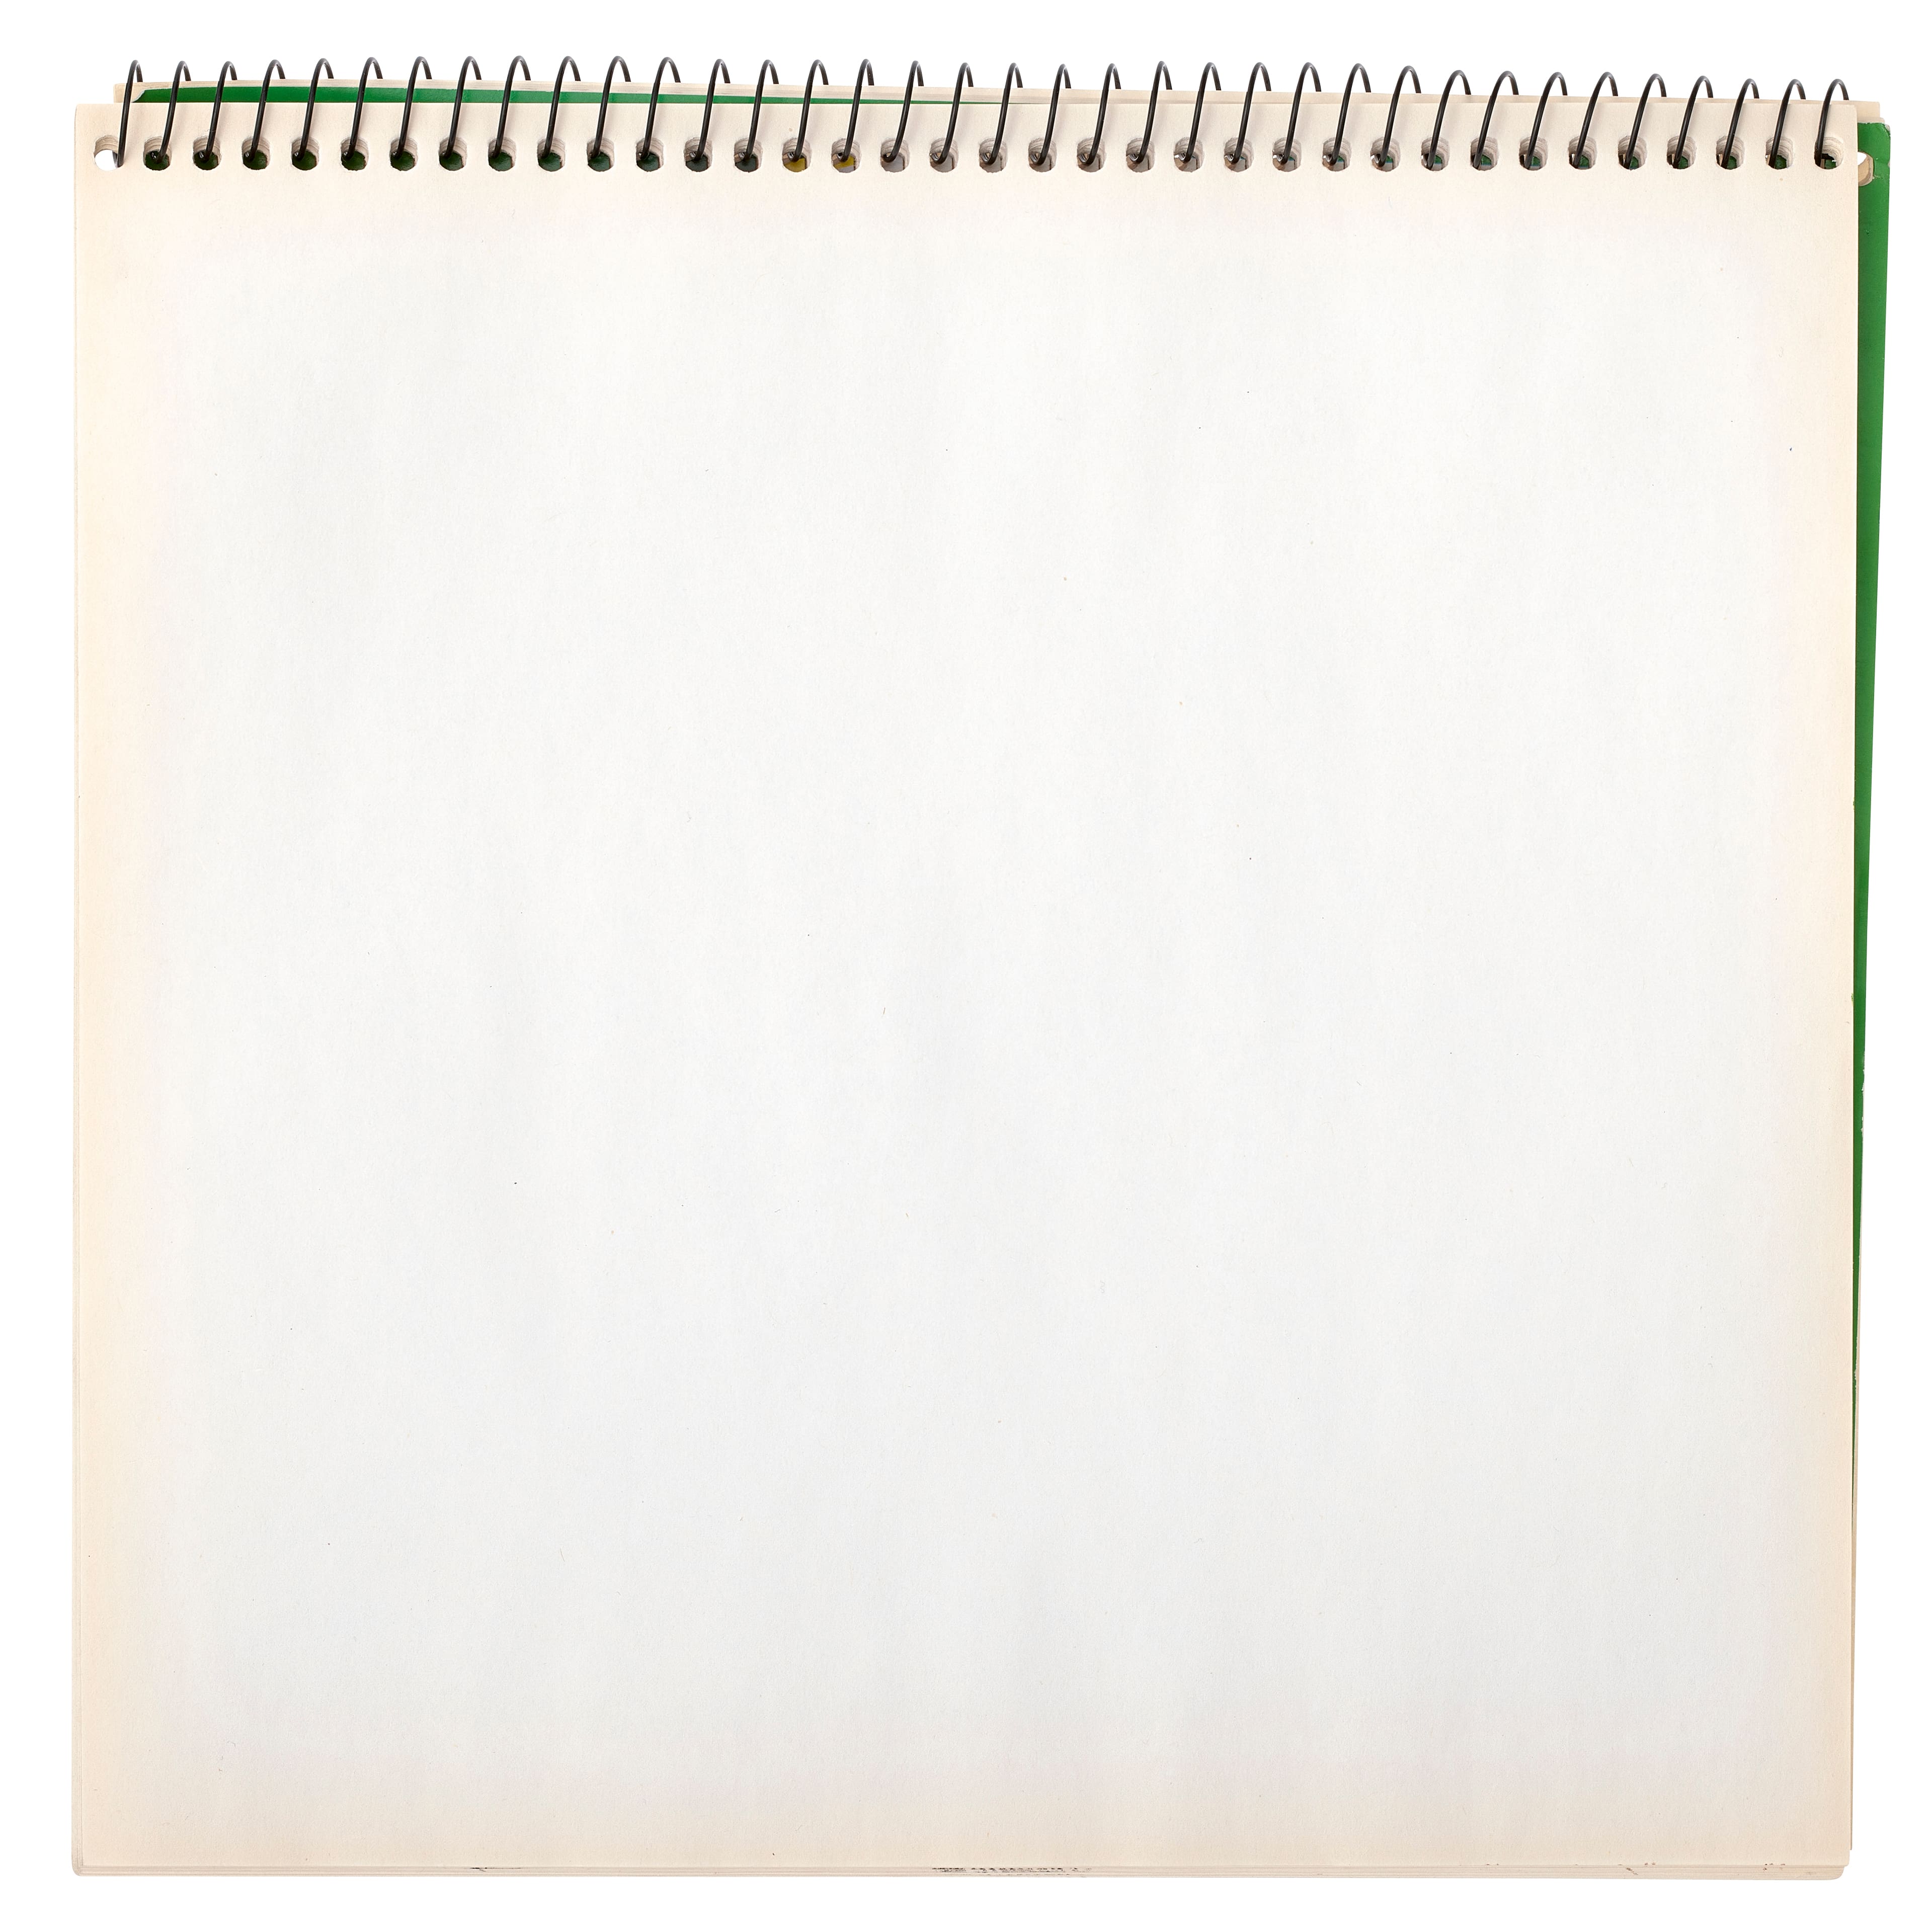 Crayola&#xAE; Heavyweight Drawing Paper Sketchbook